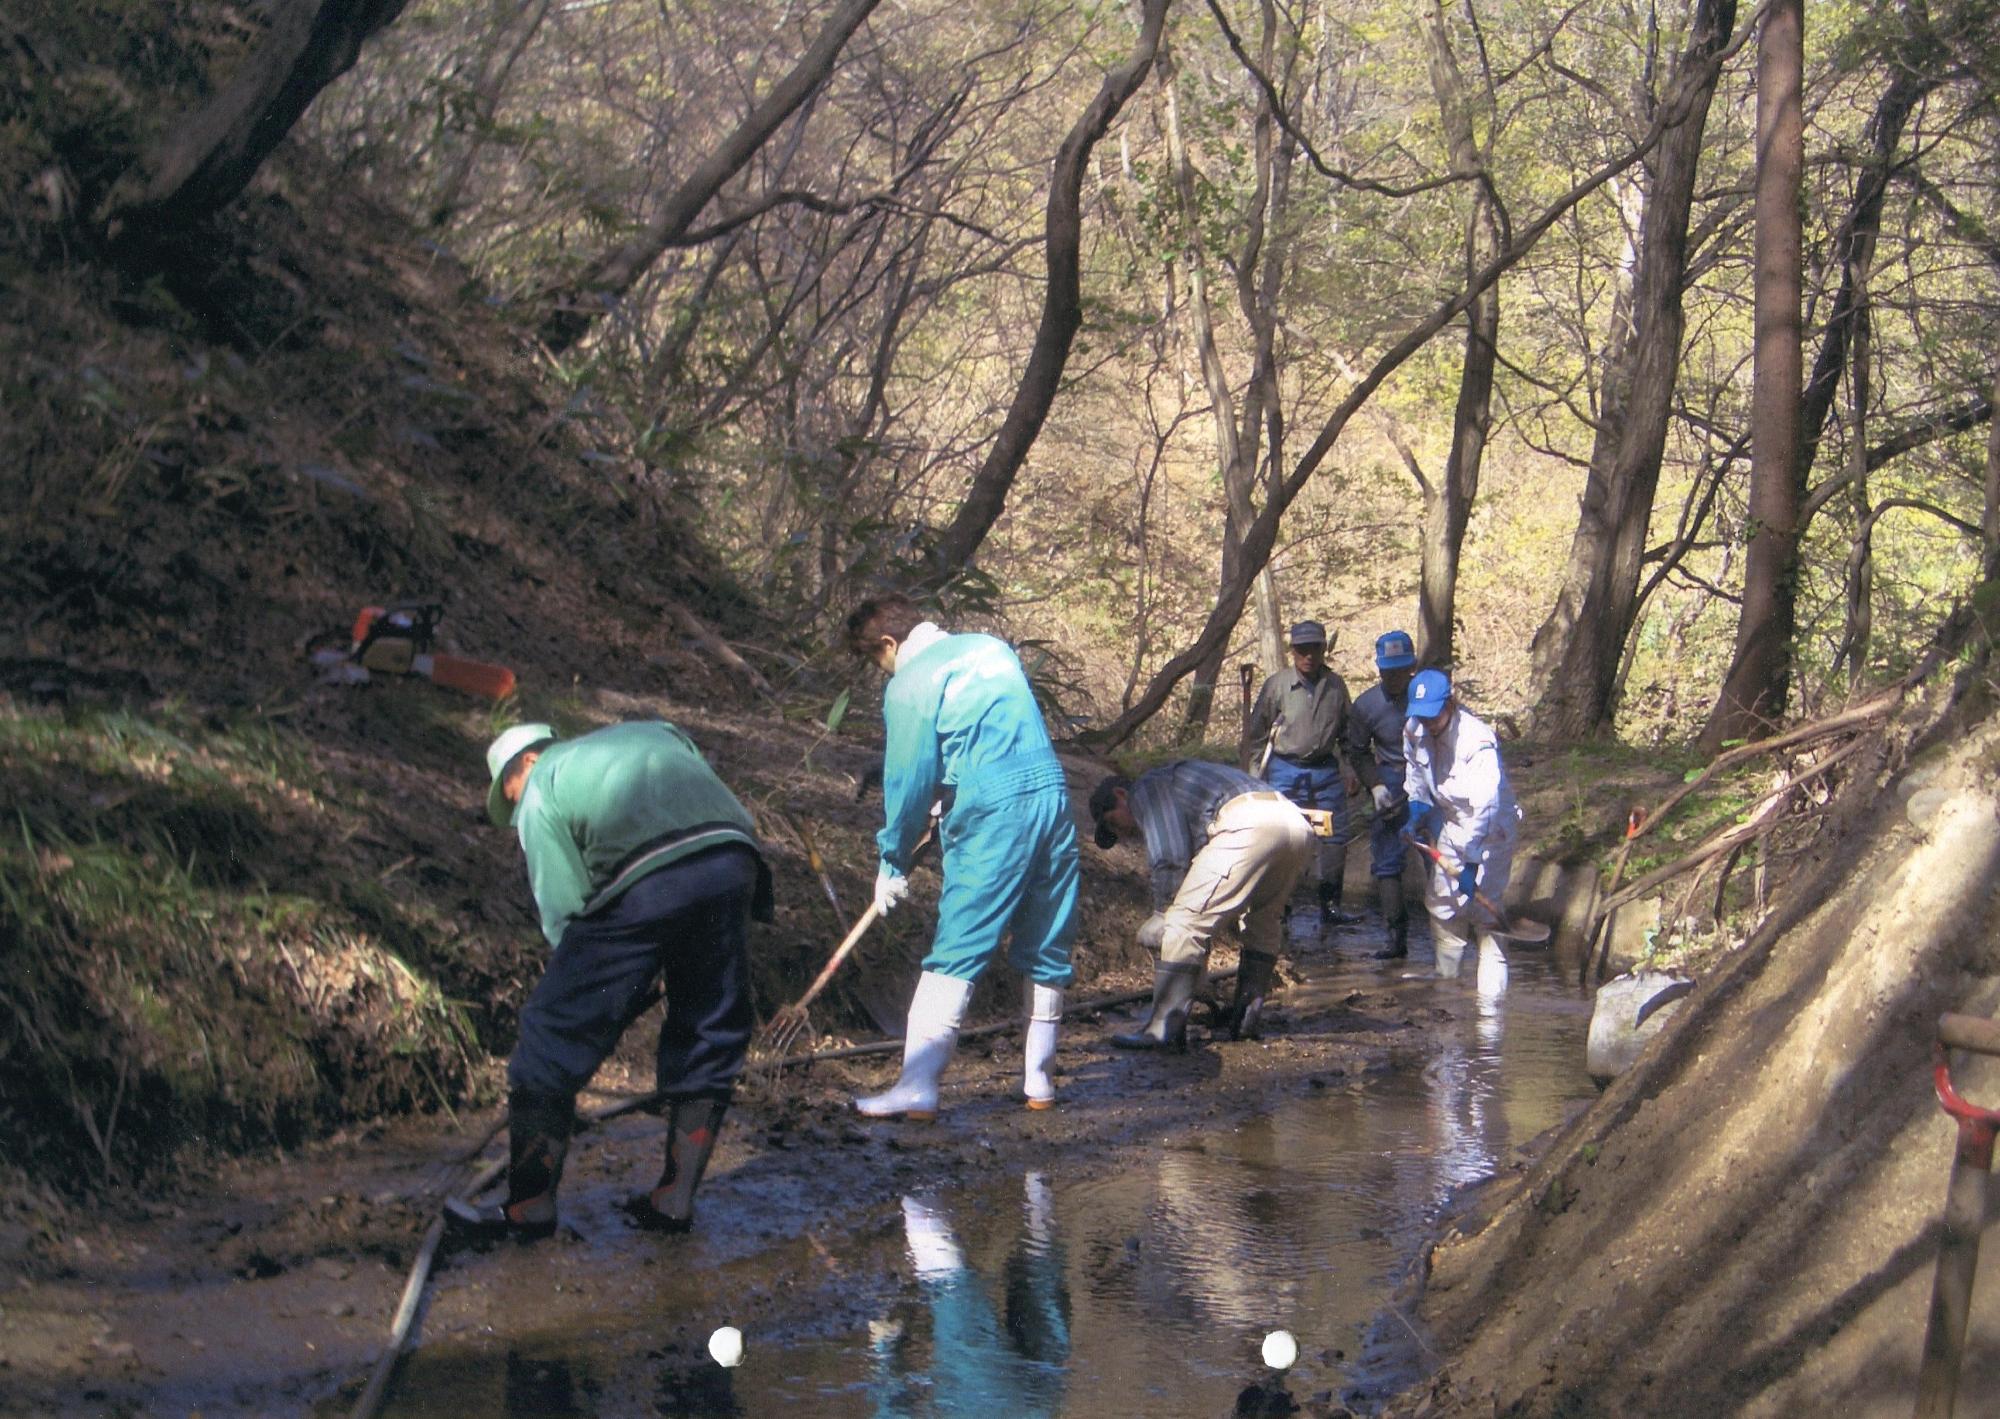 木々の生い茂った山道で長靴をはき、水管理の作業をしている5名の男性の写真